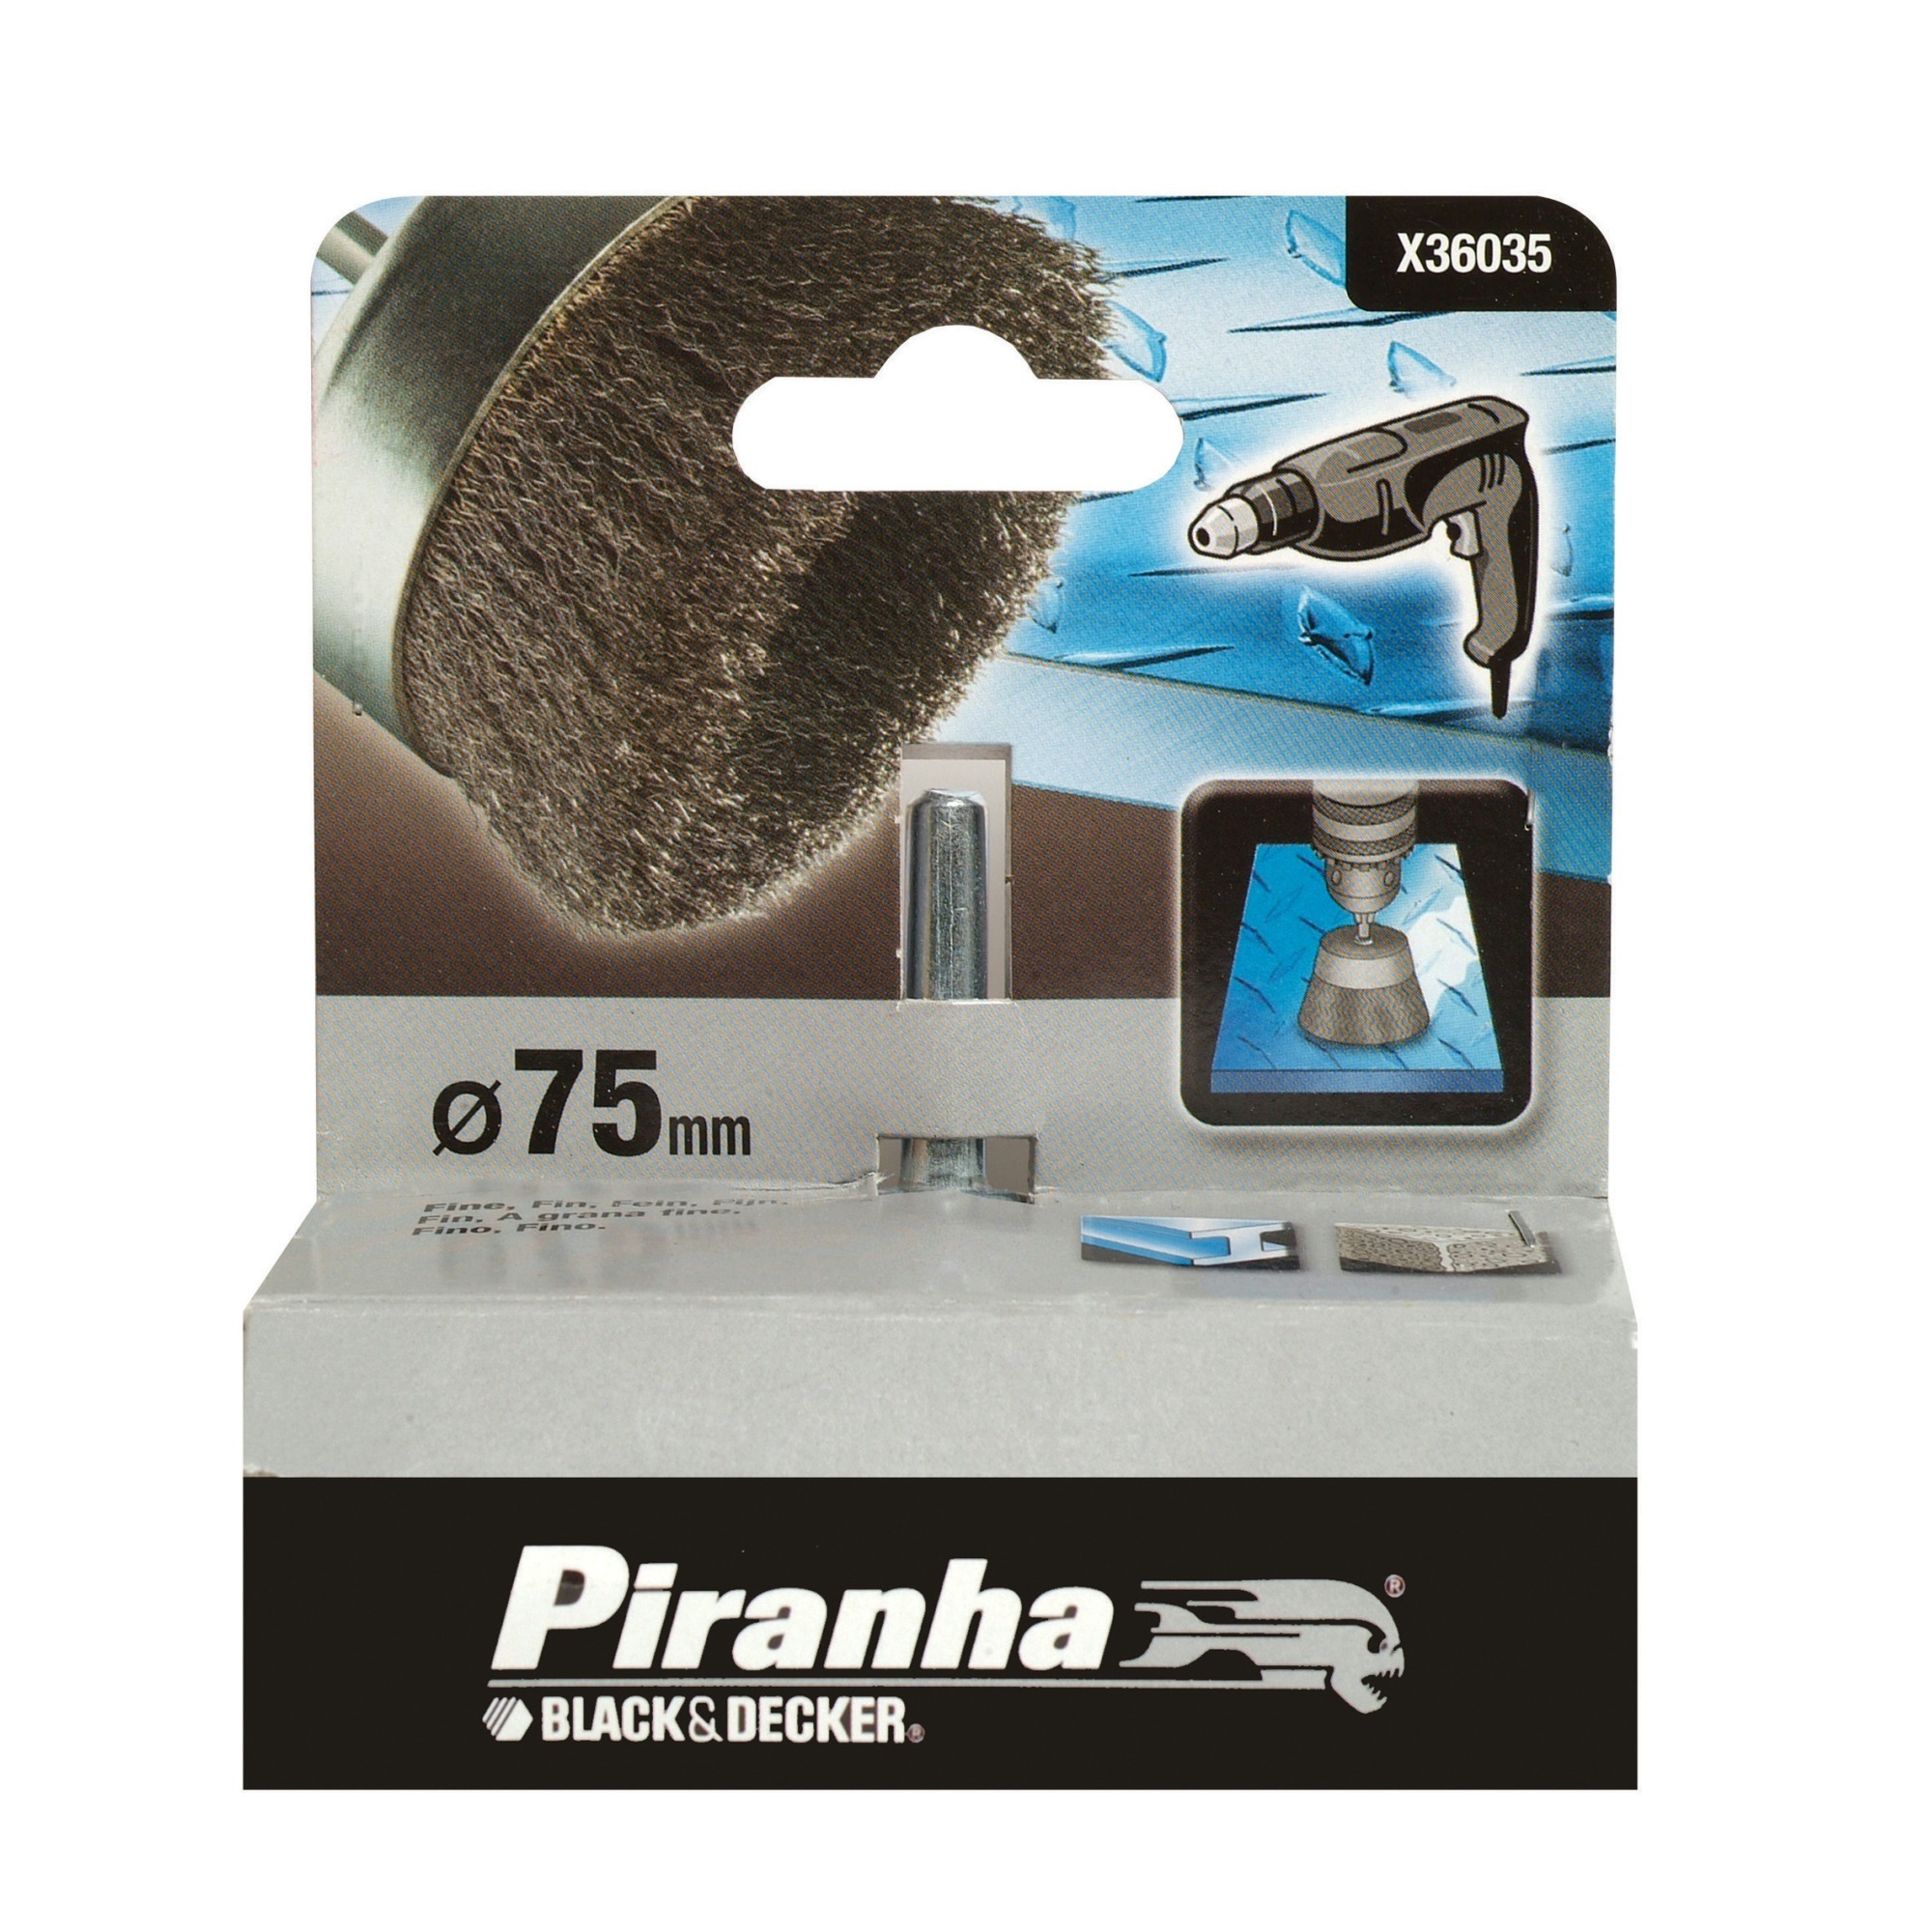 Piranha komstaaldraadborstel 75 mm X36035